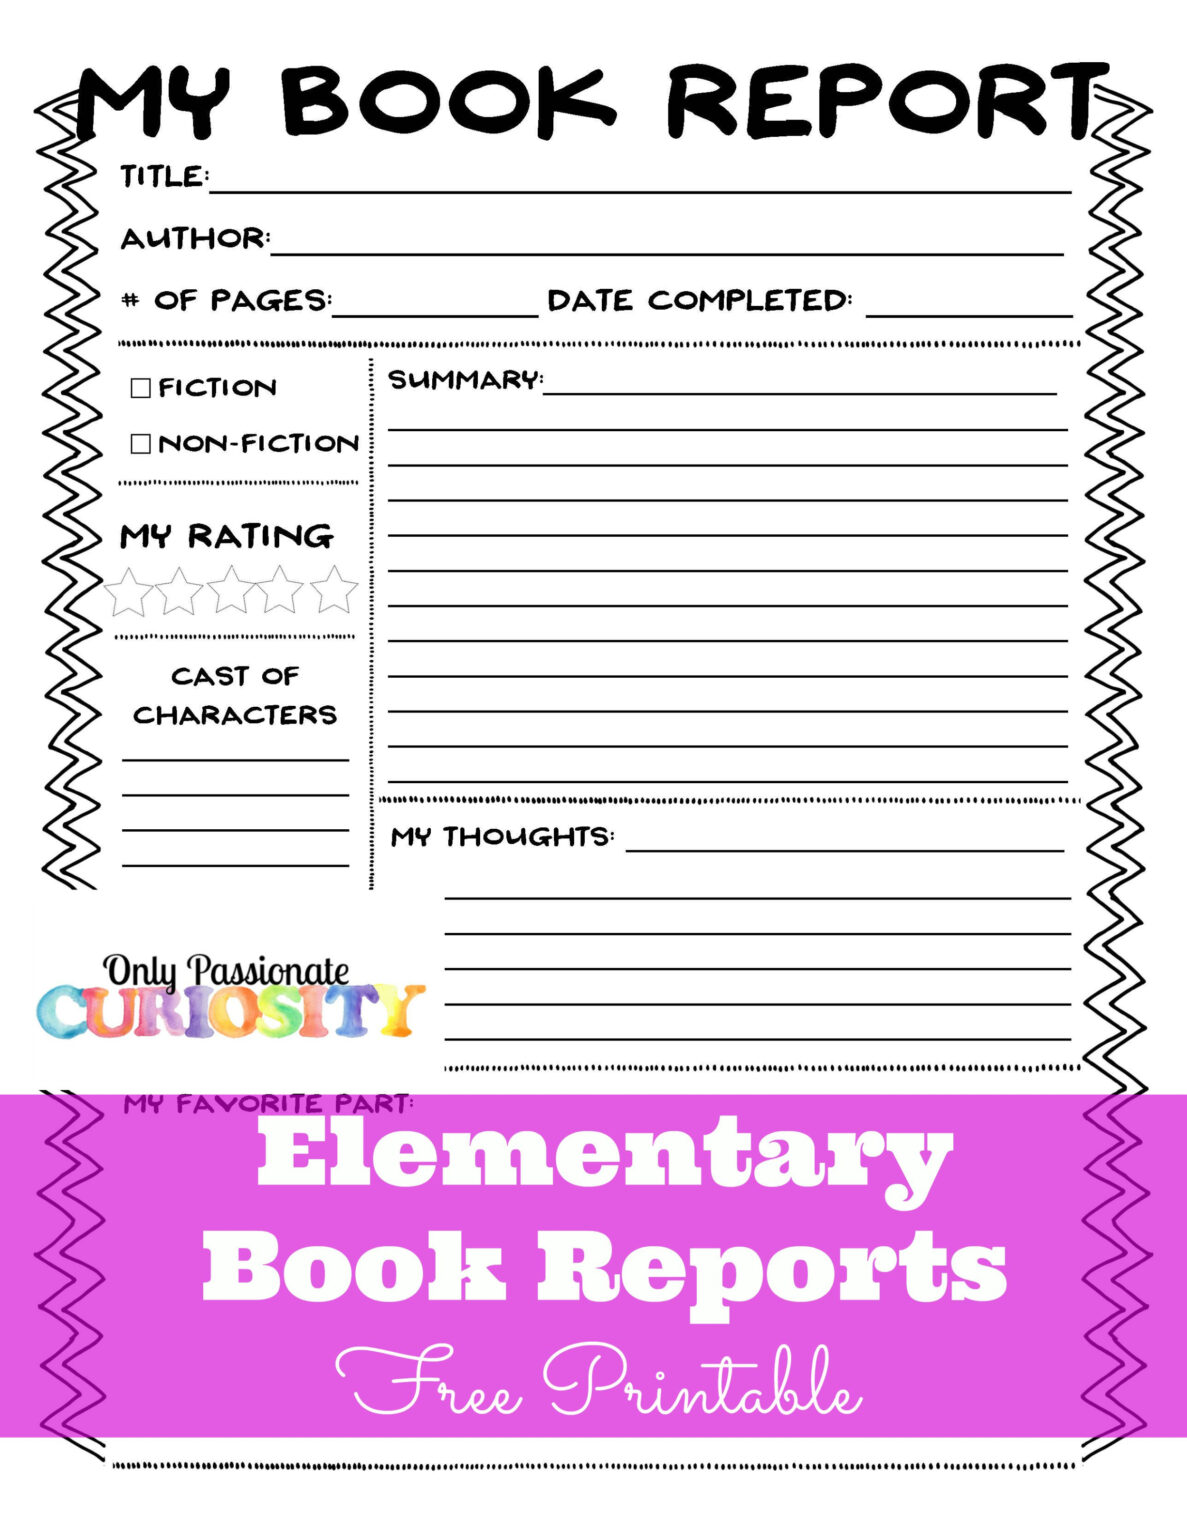 book report ideas for 5th grade